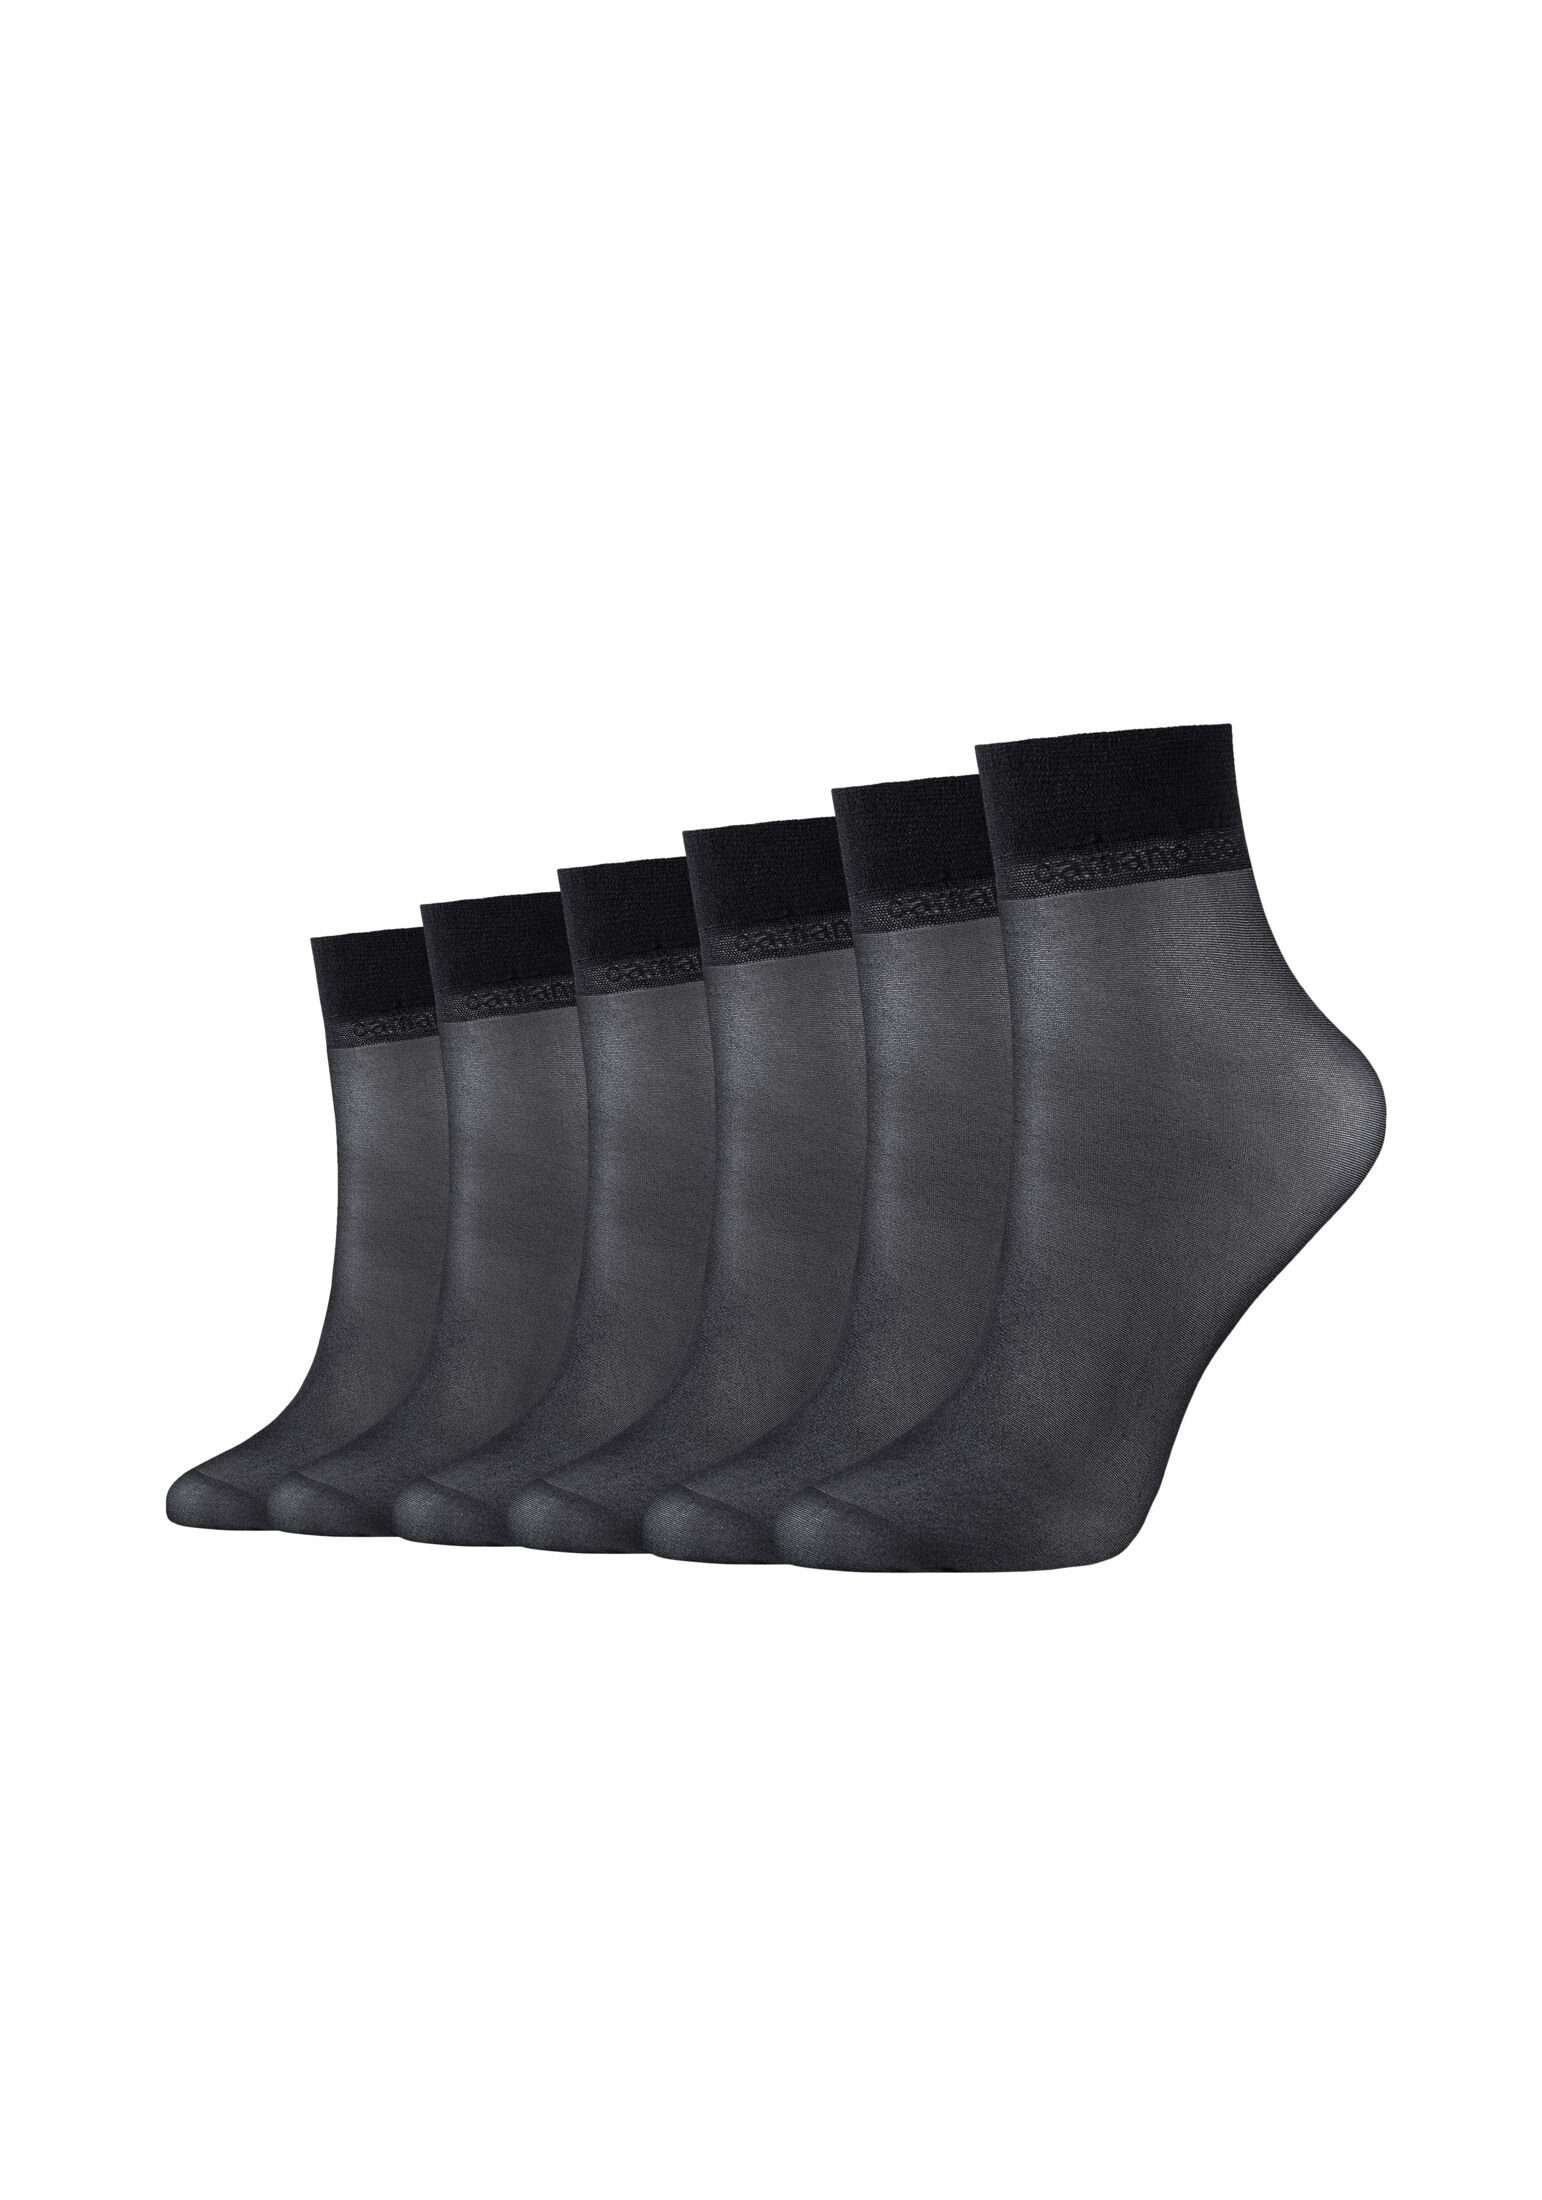 Camano Socken black Pack Socken 6er